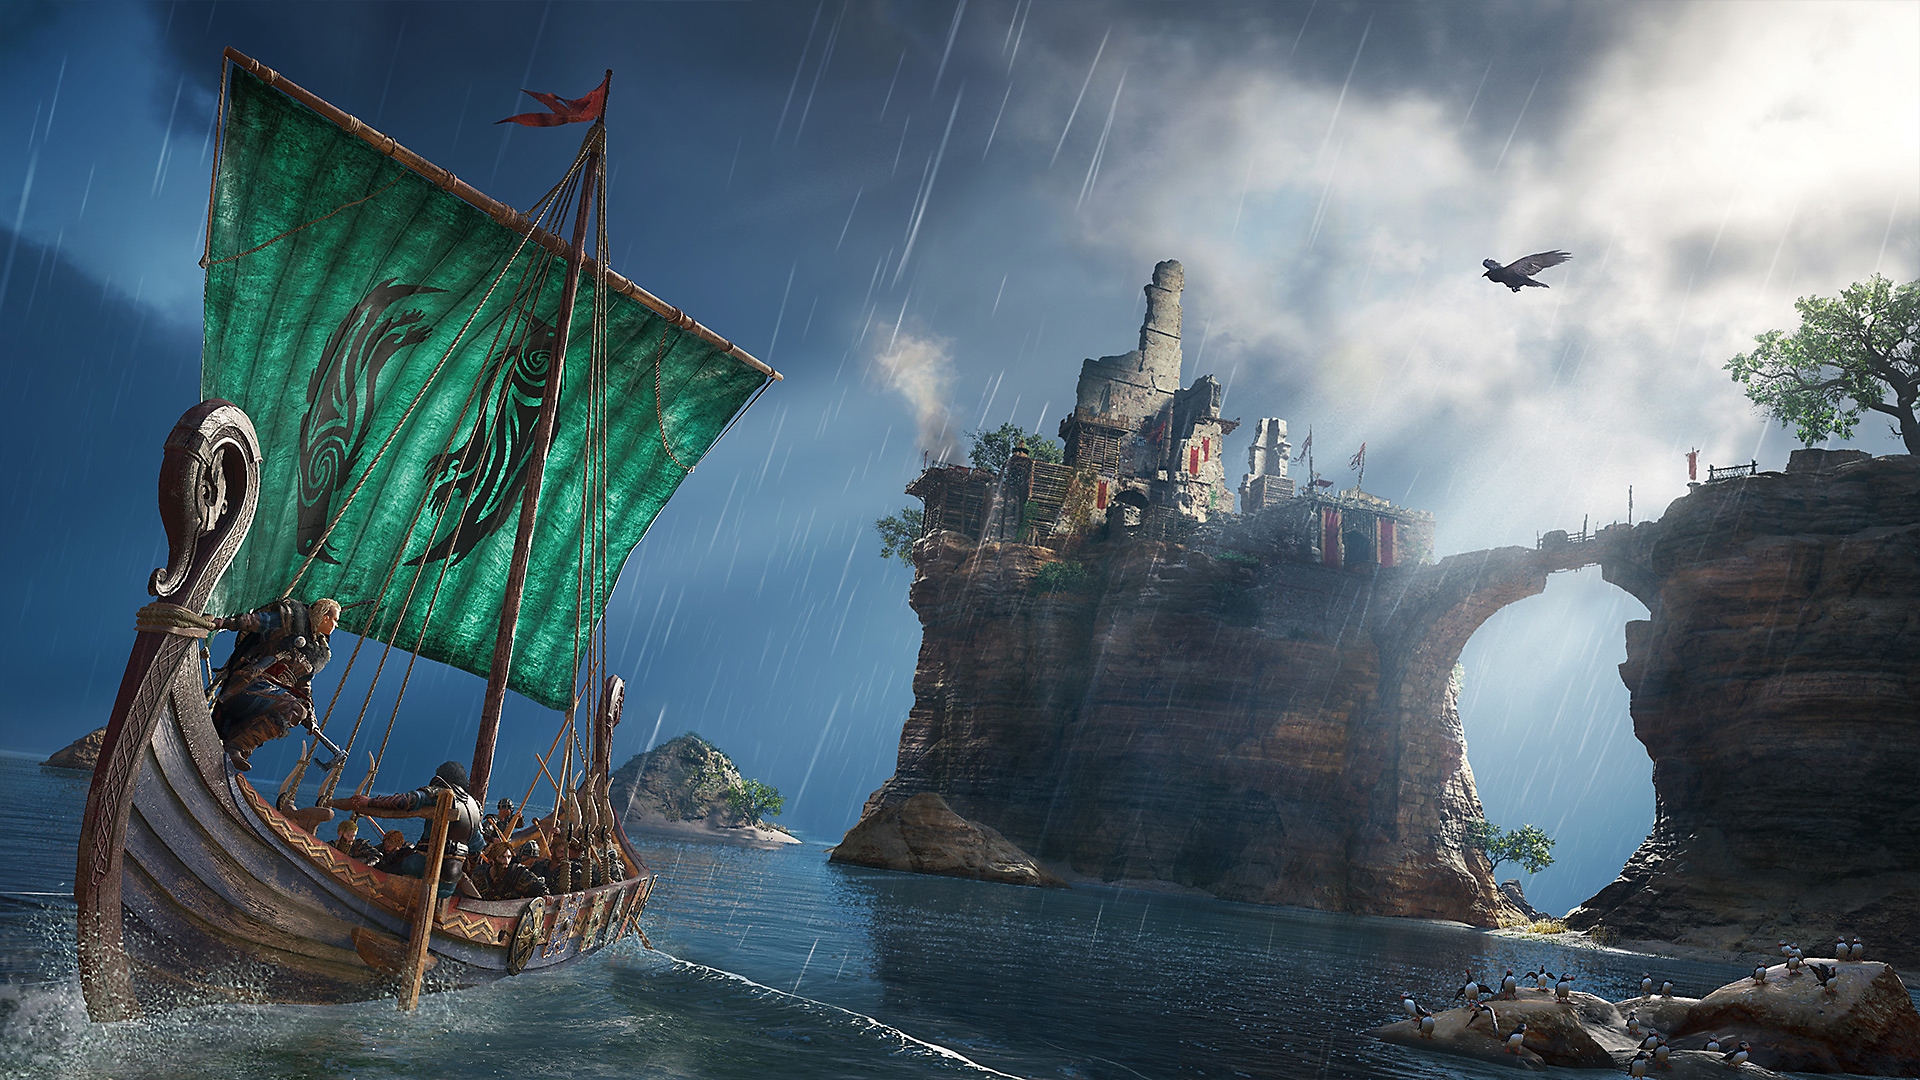 Snímka obrazovky z hry Assassin's Creed Valhalla zobrazujúca postavu na vikingskej lodi, ktorá sa pozerá na budovu na ostrove